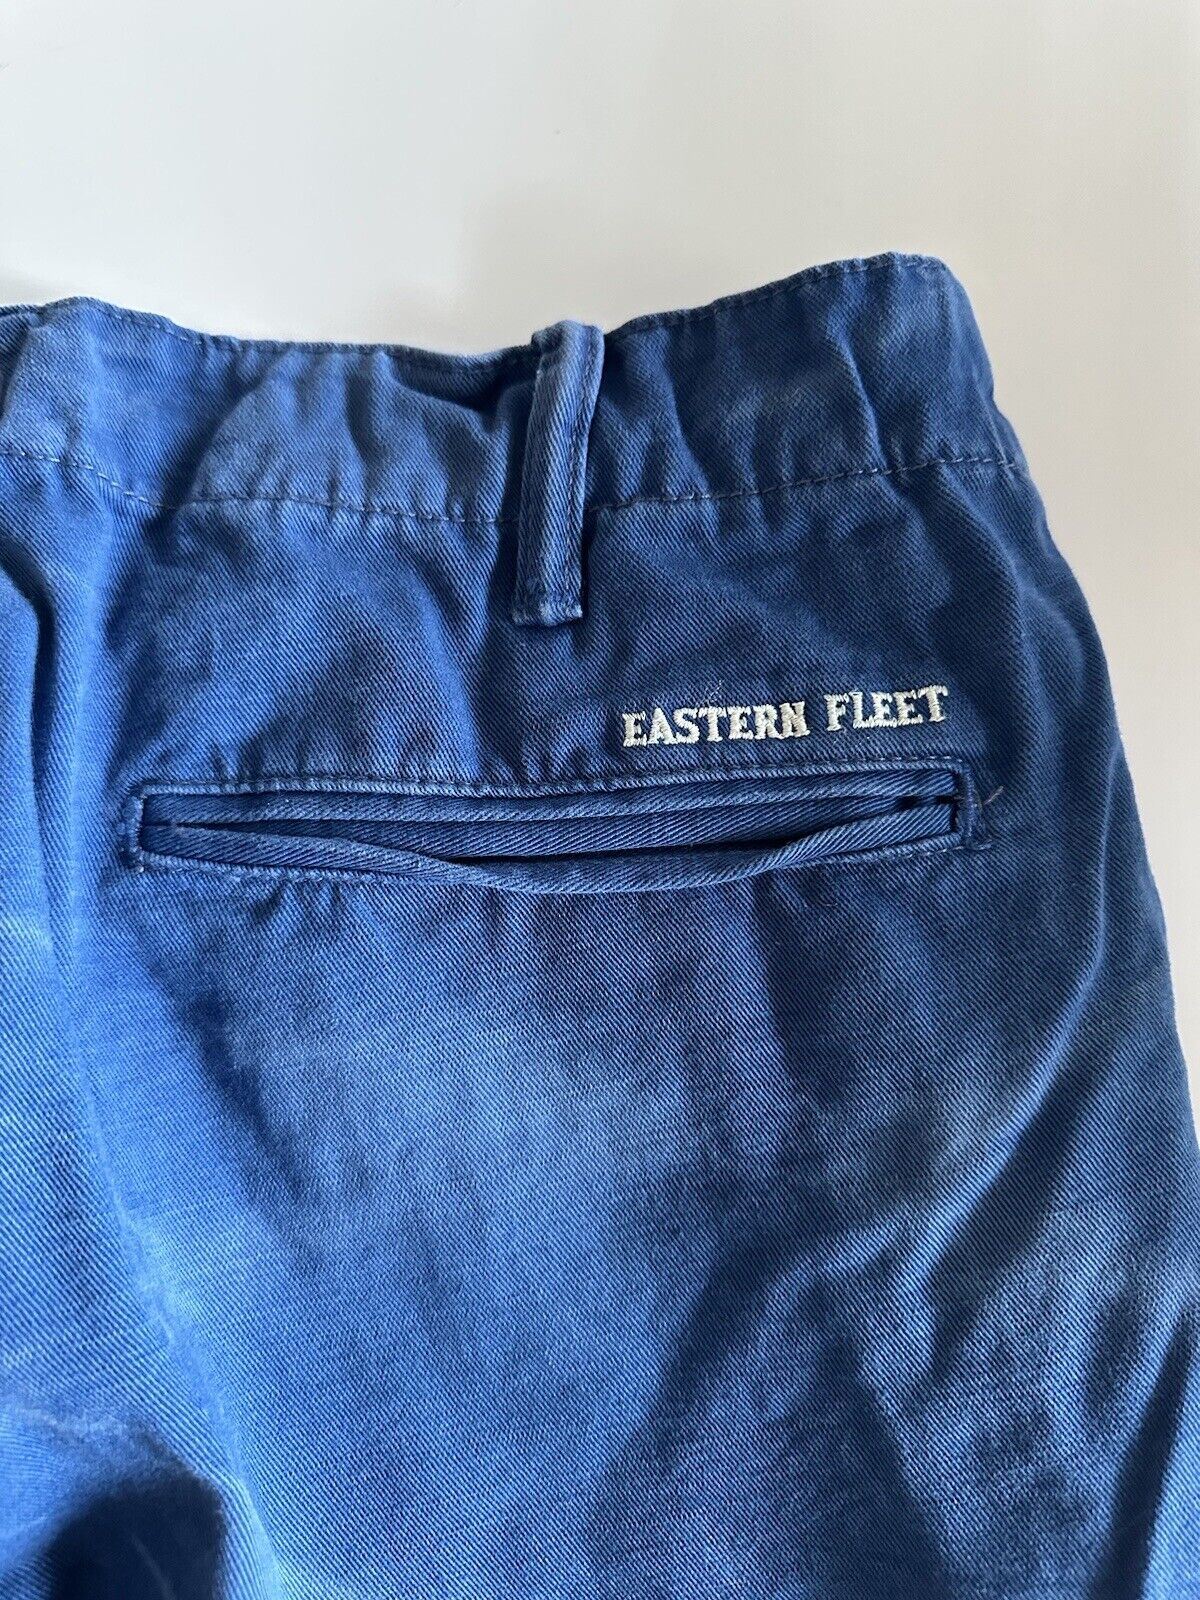 Polo Ralph Lauren Herren-Shorts in Blau, Größe 33 US 